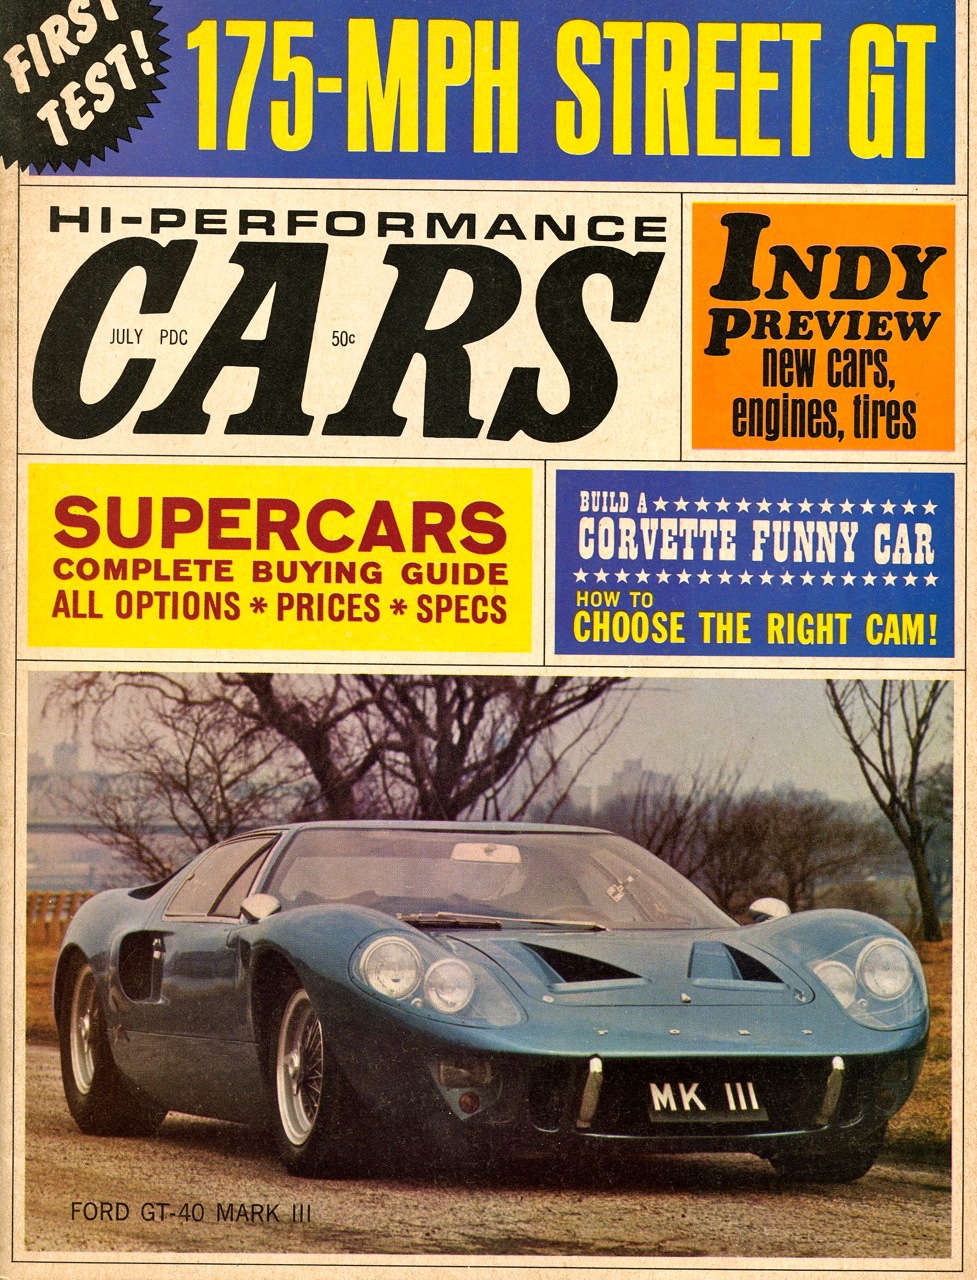 Bill Kolb Jr. - Gotham Ford GT40 Mark III, CARS, July 1967